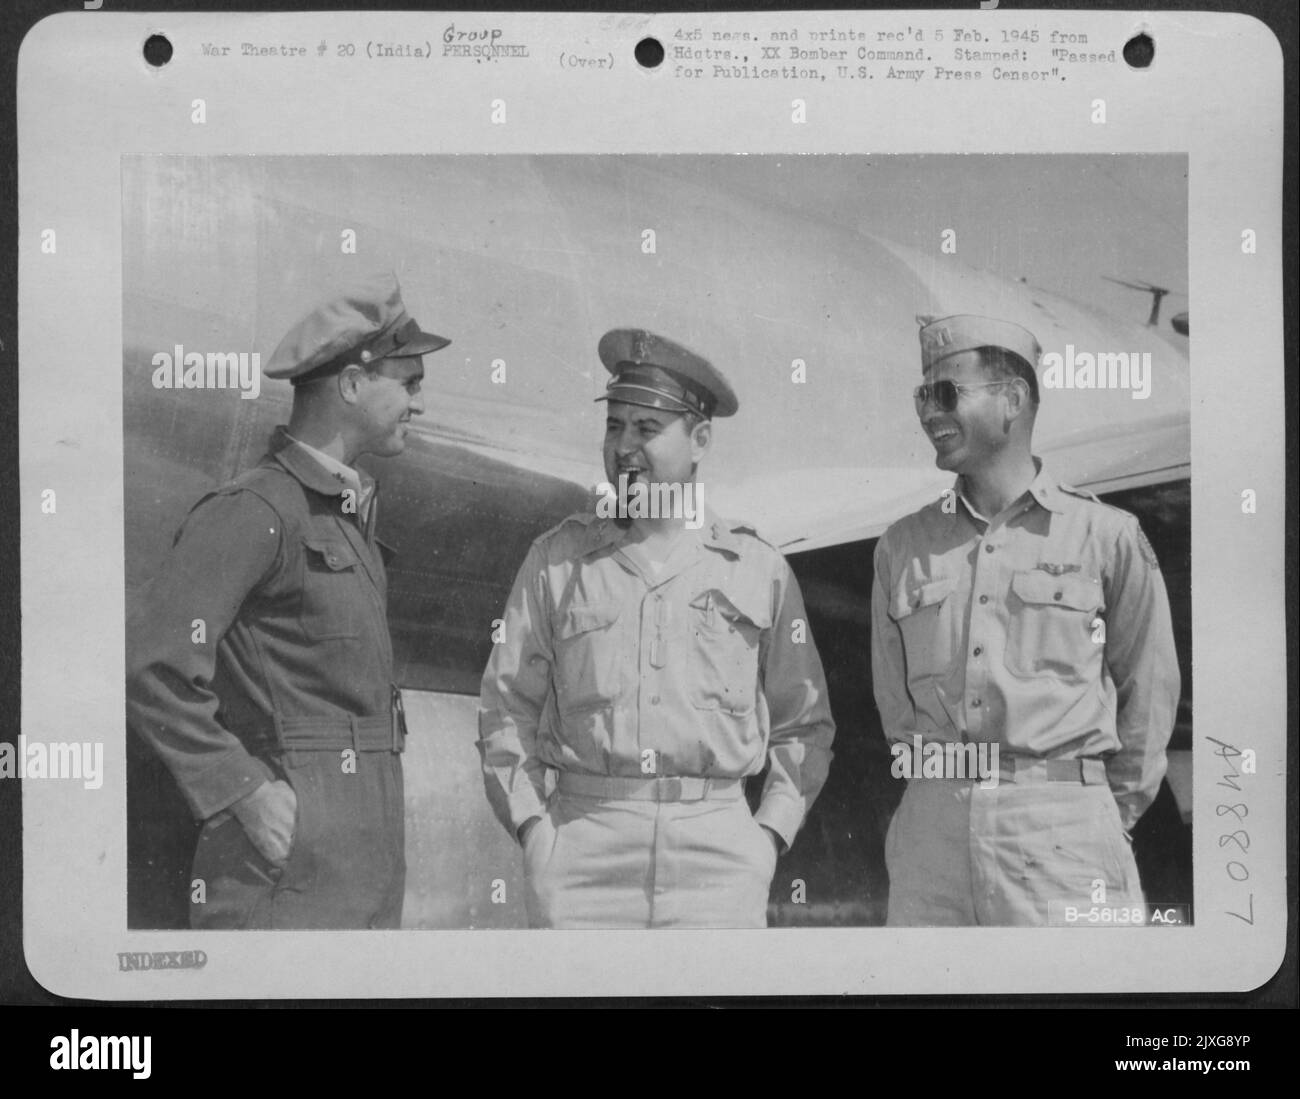 India - Curtis generale maggiore E. Lemay (Center) è raffigurato con pilota e co-pilota che lo hanno volato dall'India alle Marianas in Un Boeing B-29 Superfortress. A sinistra è il maggiore Renato Simoni, San Jose, California, Co-pilota; e a destra è il Capitano Robert Berman, O. Foto Stock